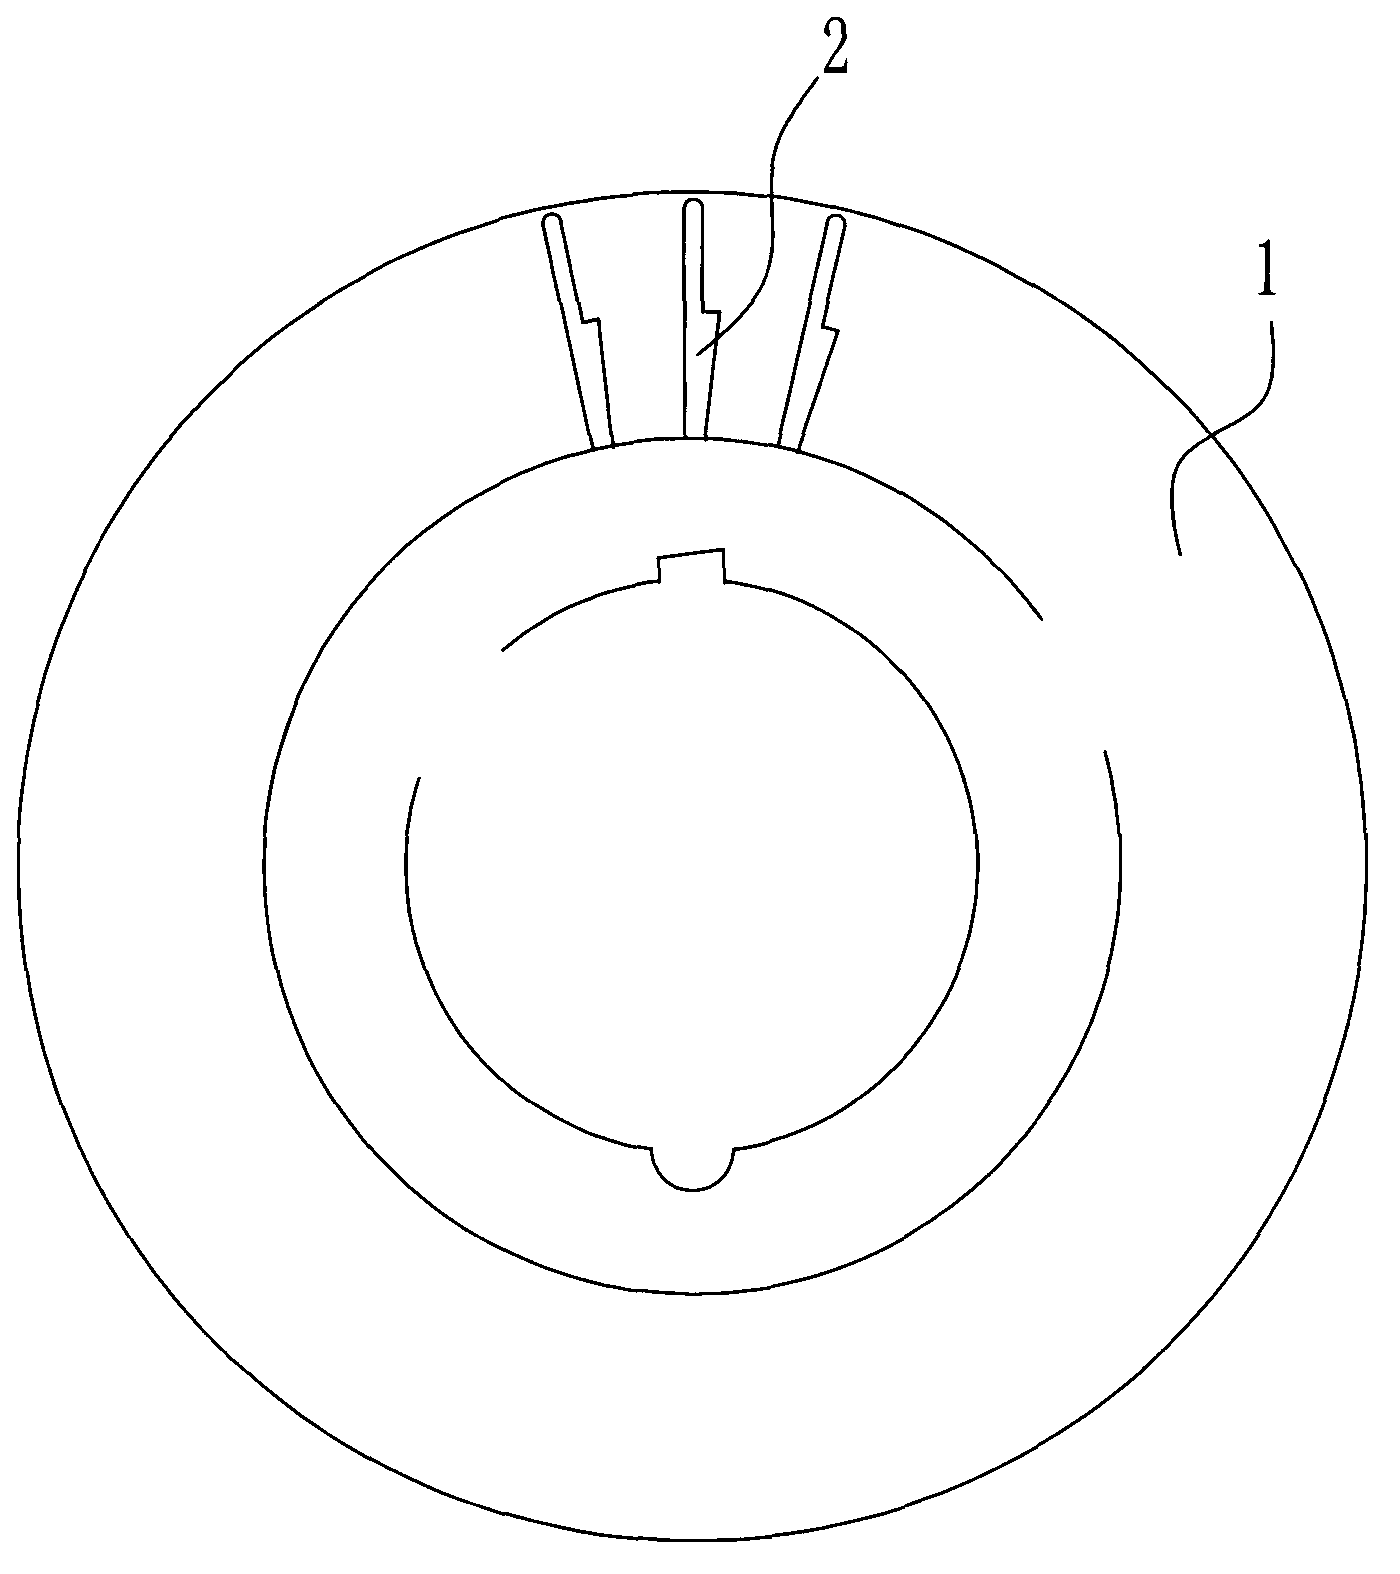 Rotor sheet for motor